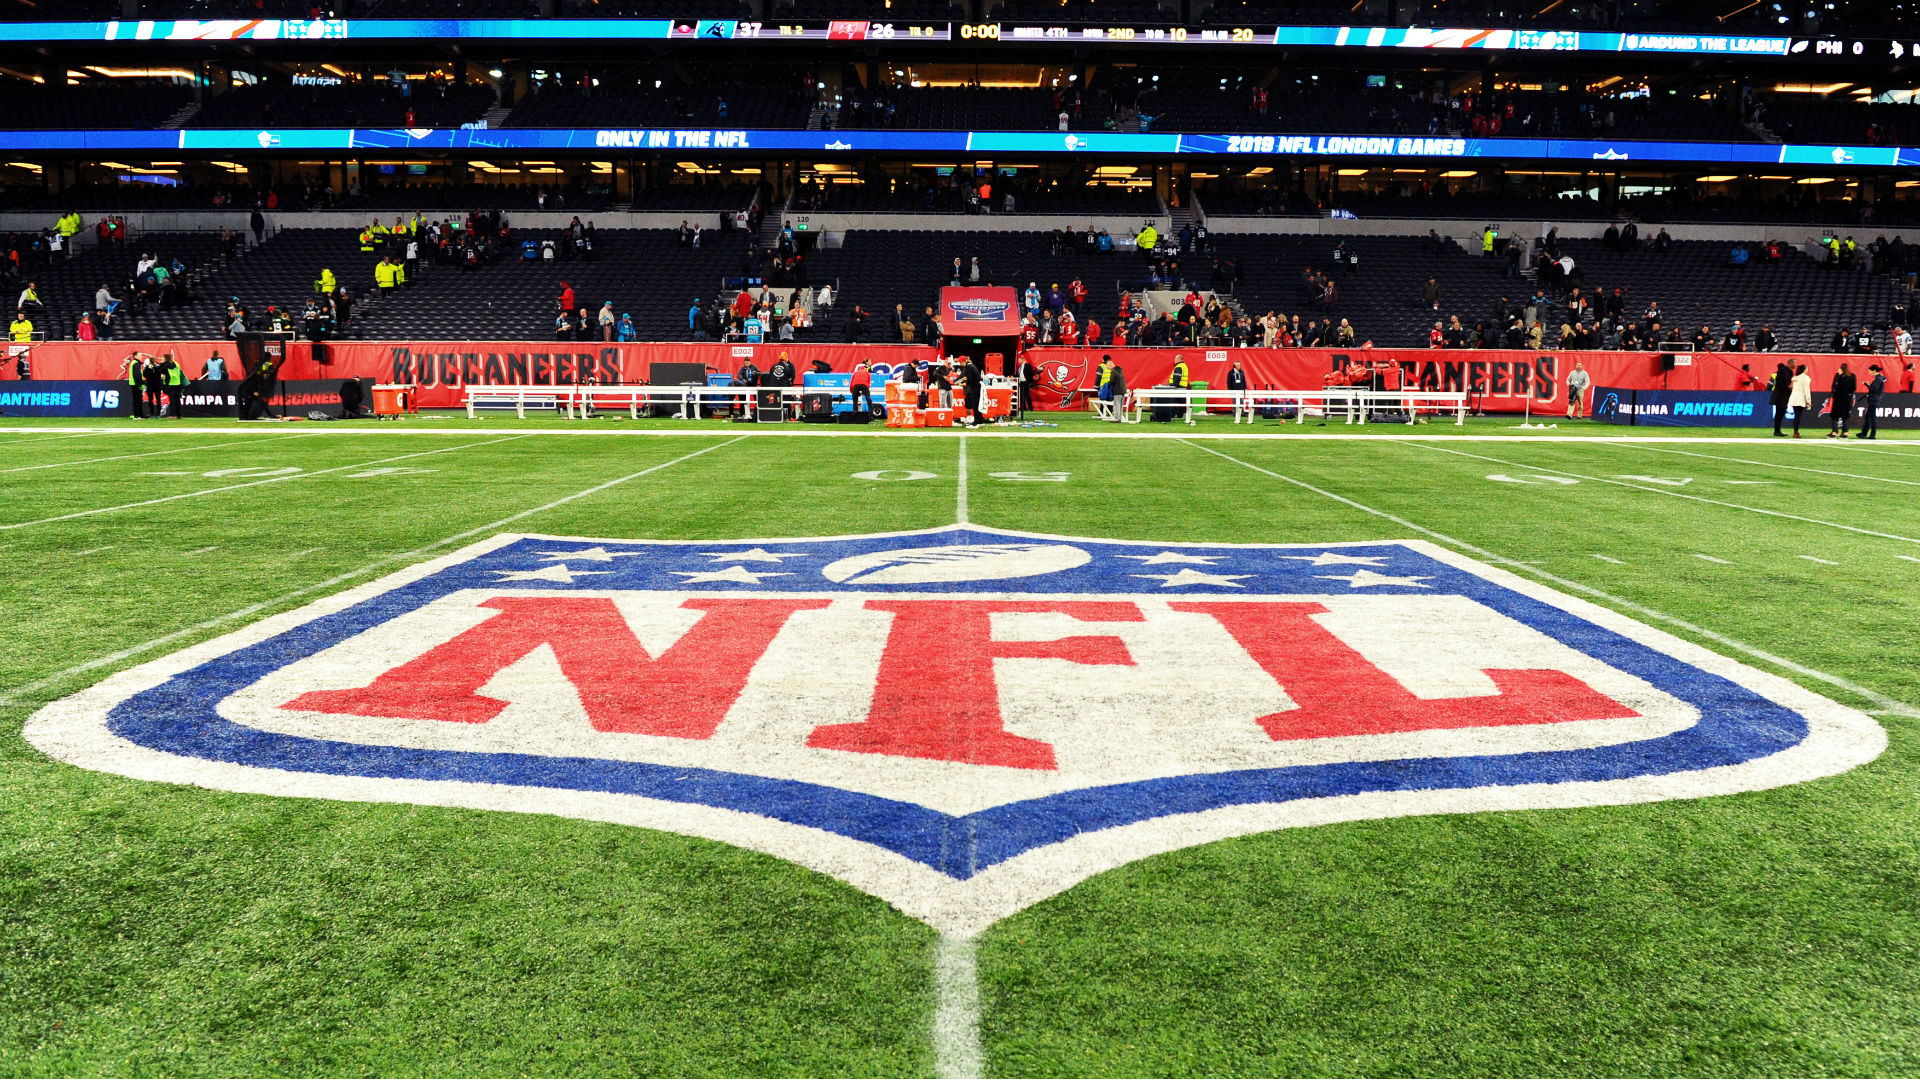 "La NFL ne joue pas" - Stephen Smith est convaincu que la ligue ira de l'avant en douceur